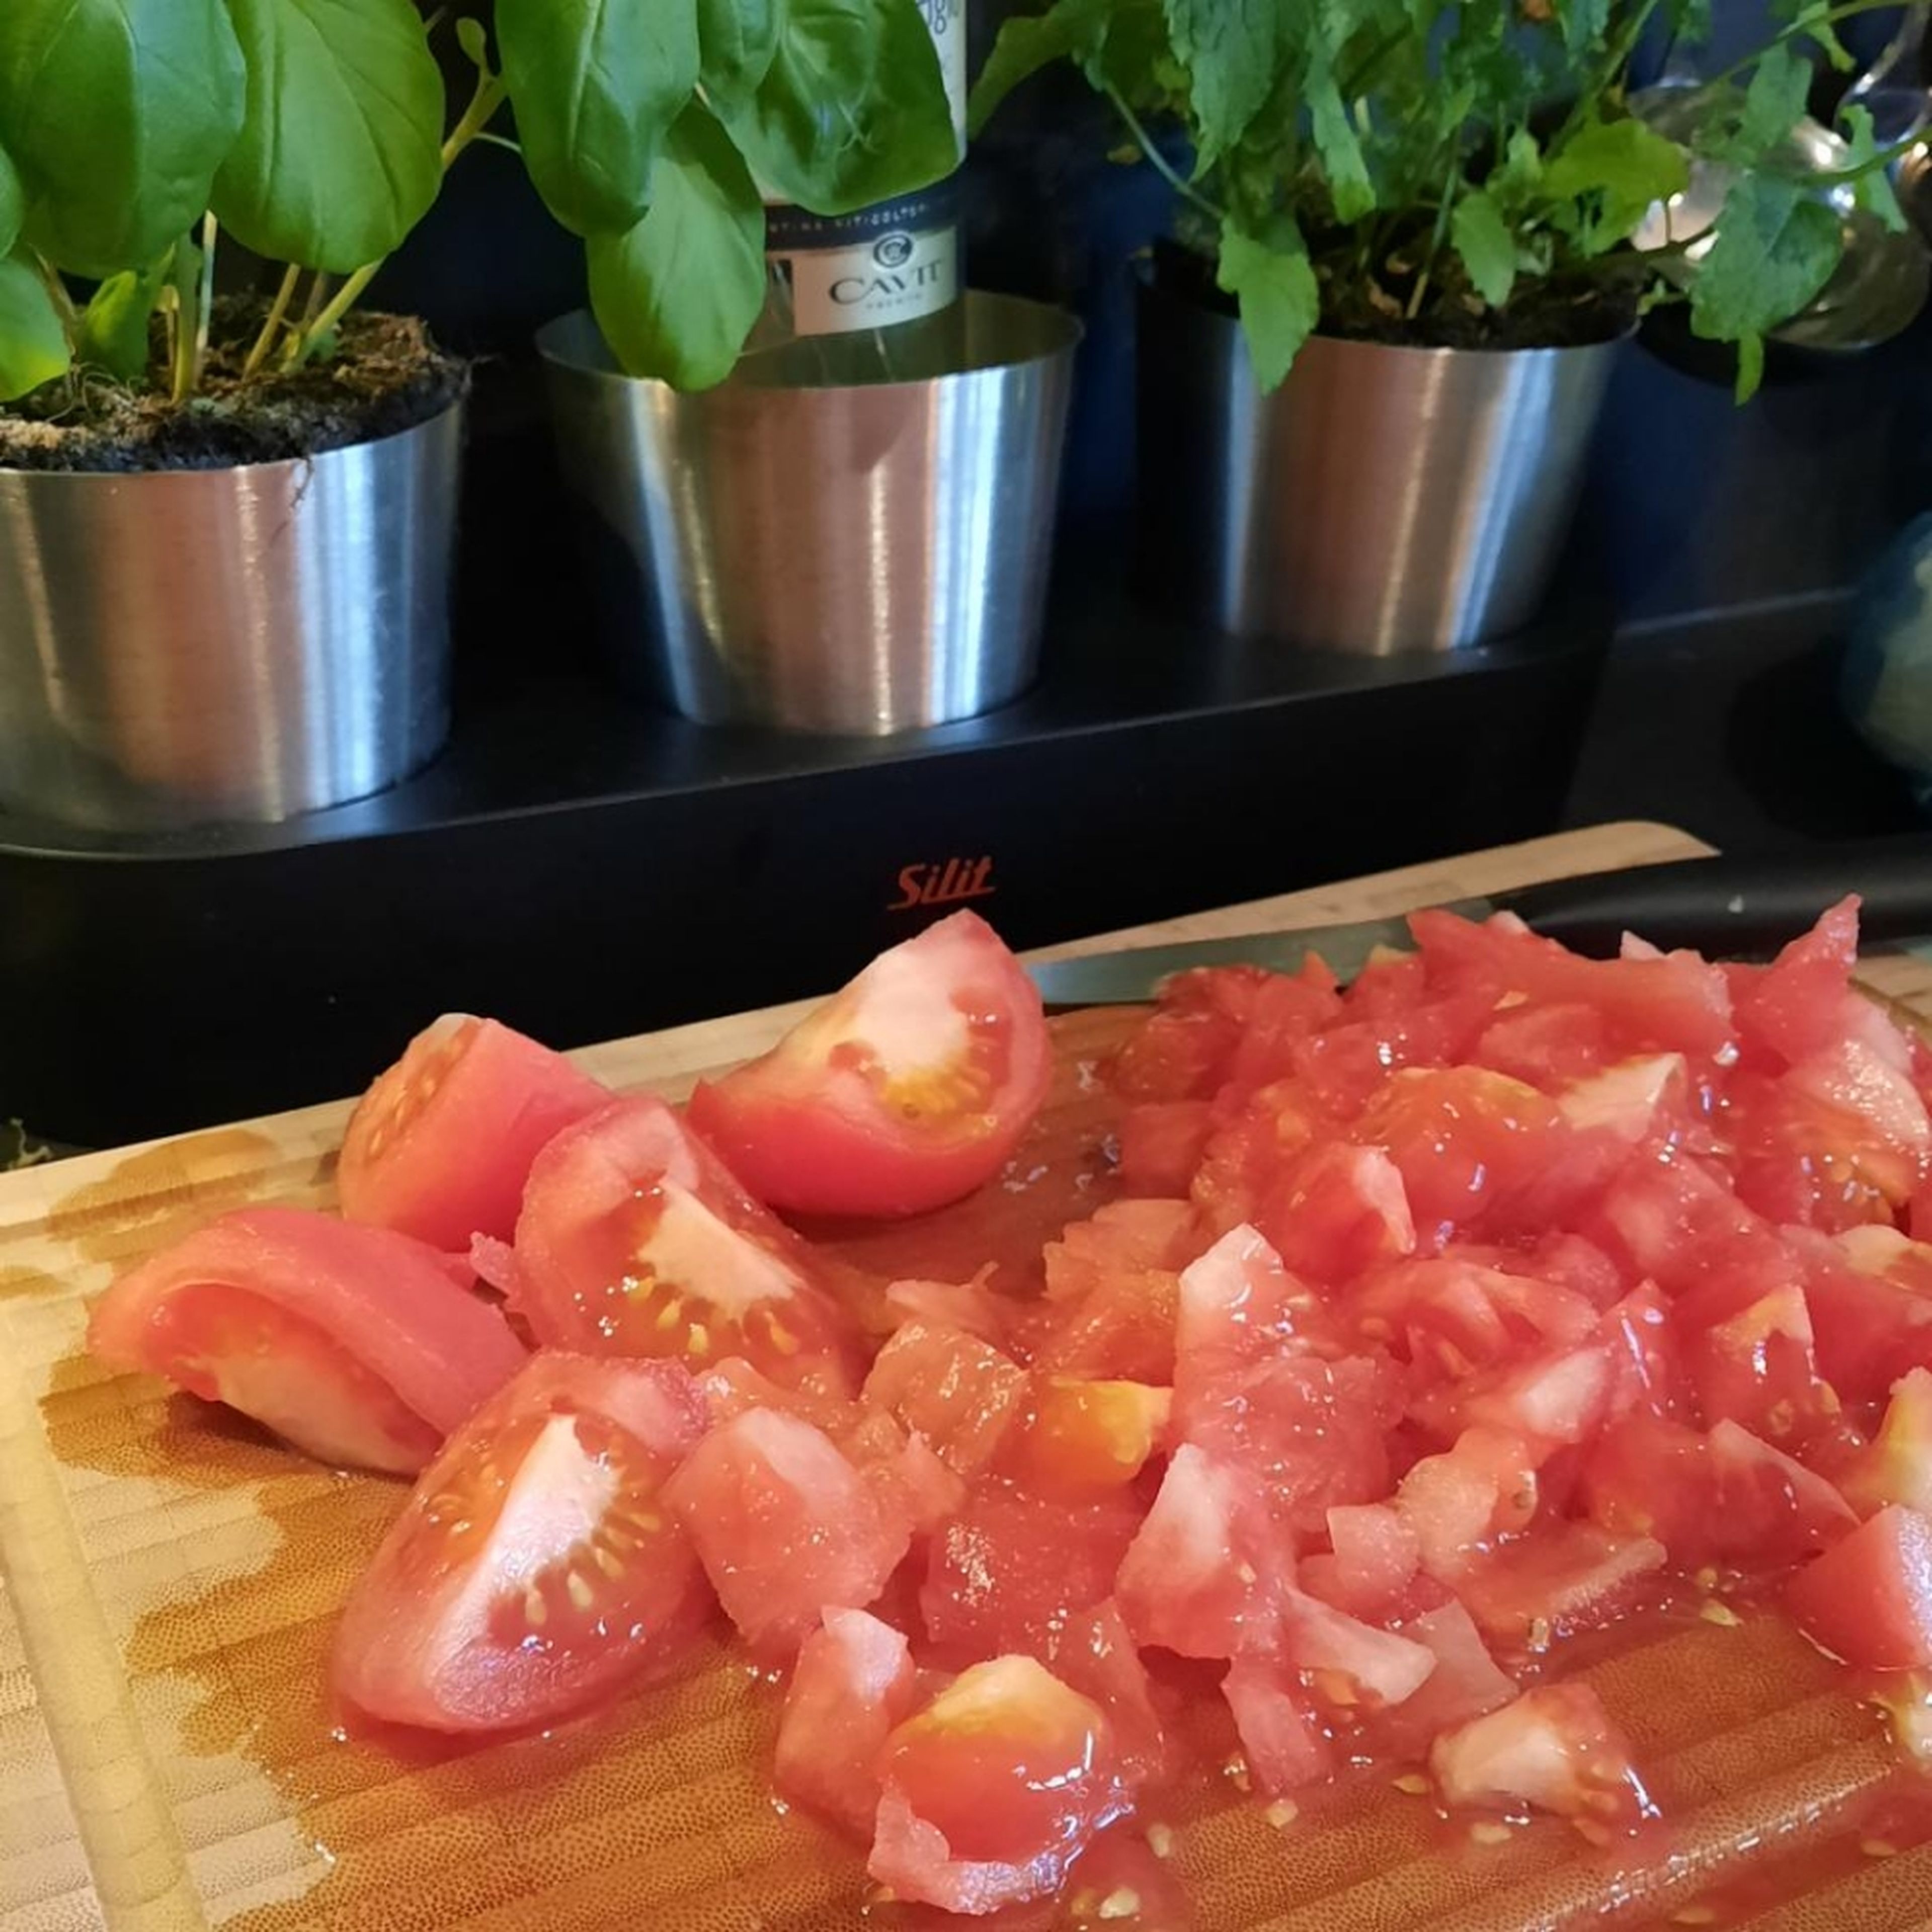 Die Tomaten würfeln und mit der Brühe in den Topf geben. Alles aufkochen und bei mittlerer Hitze ca. 10 Minuten köcheln lassen.